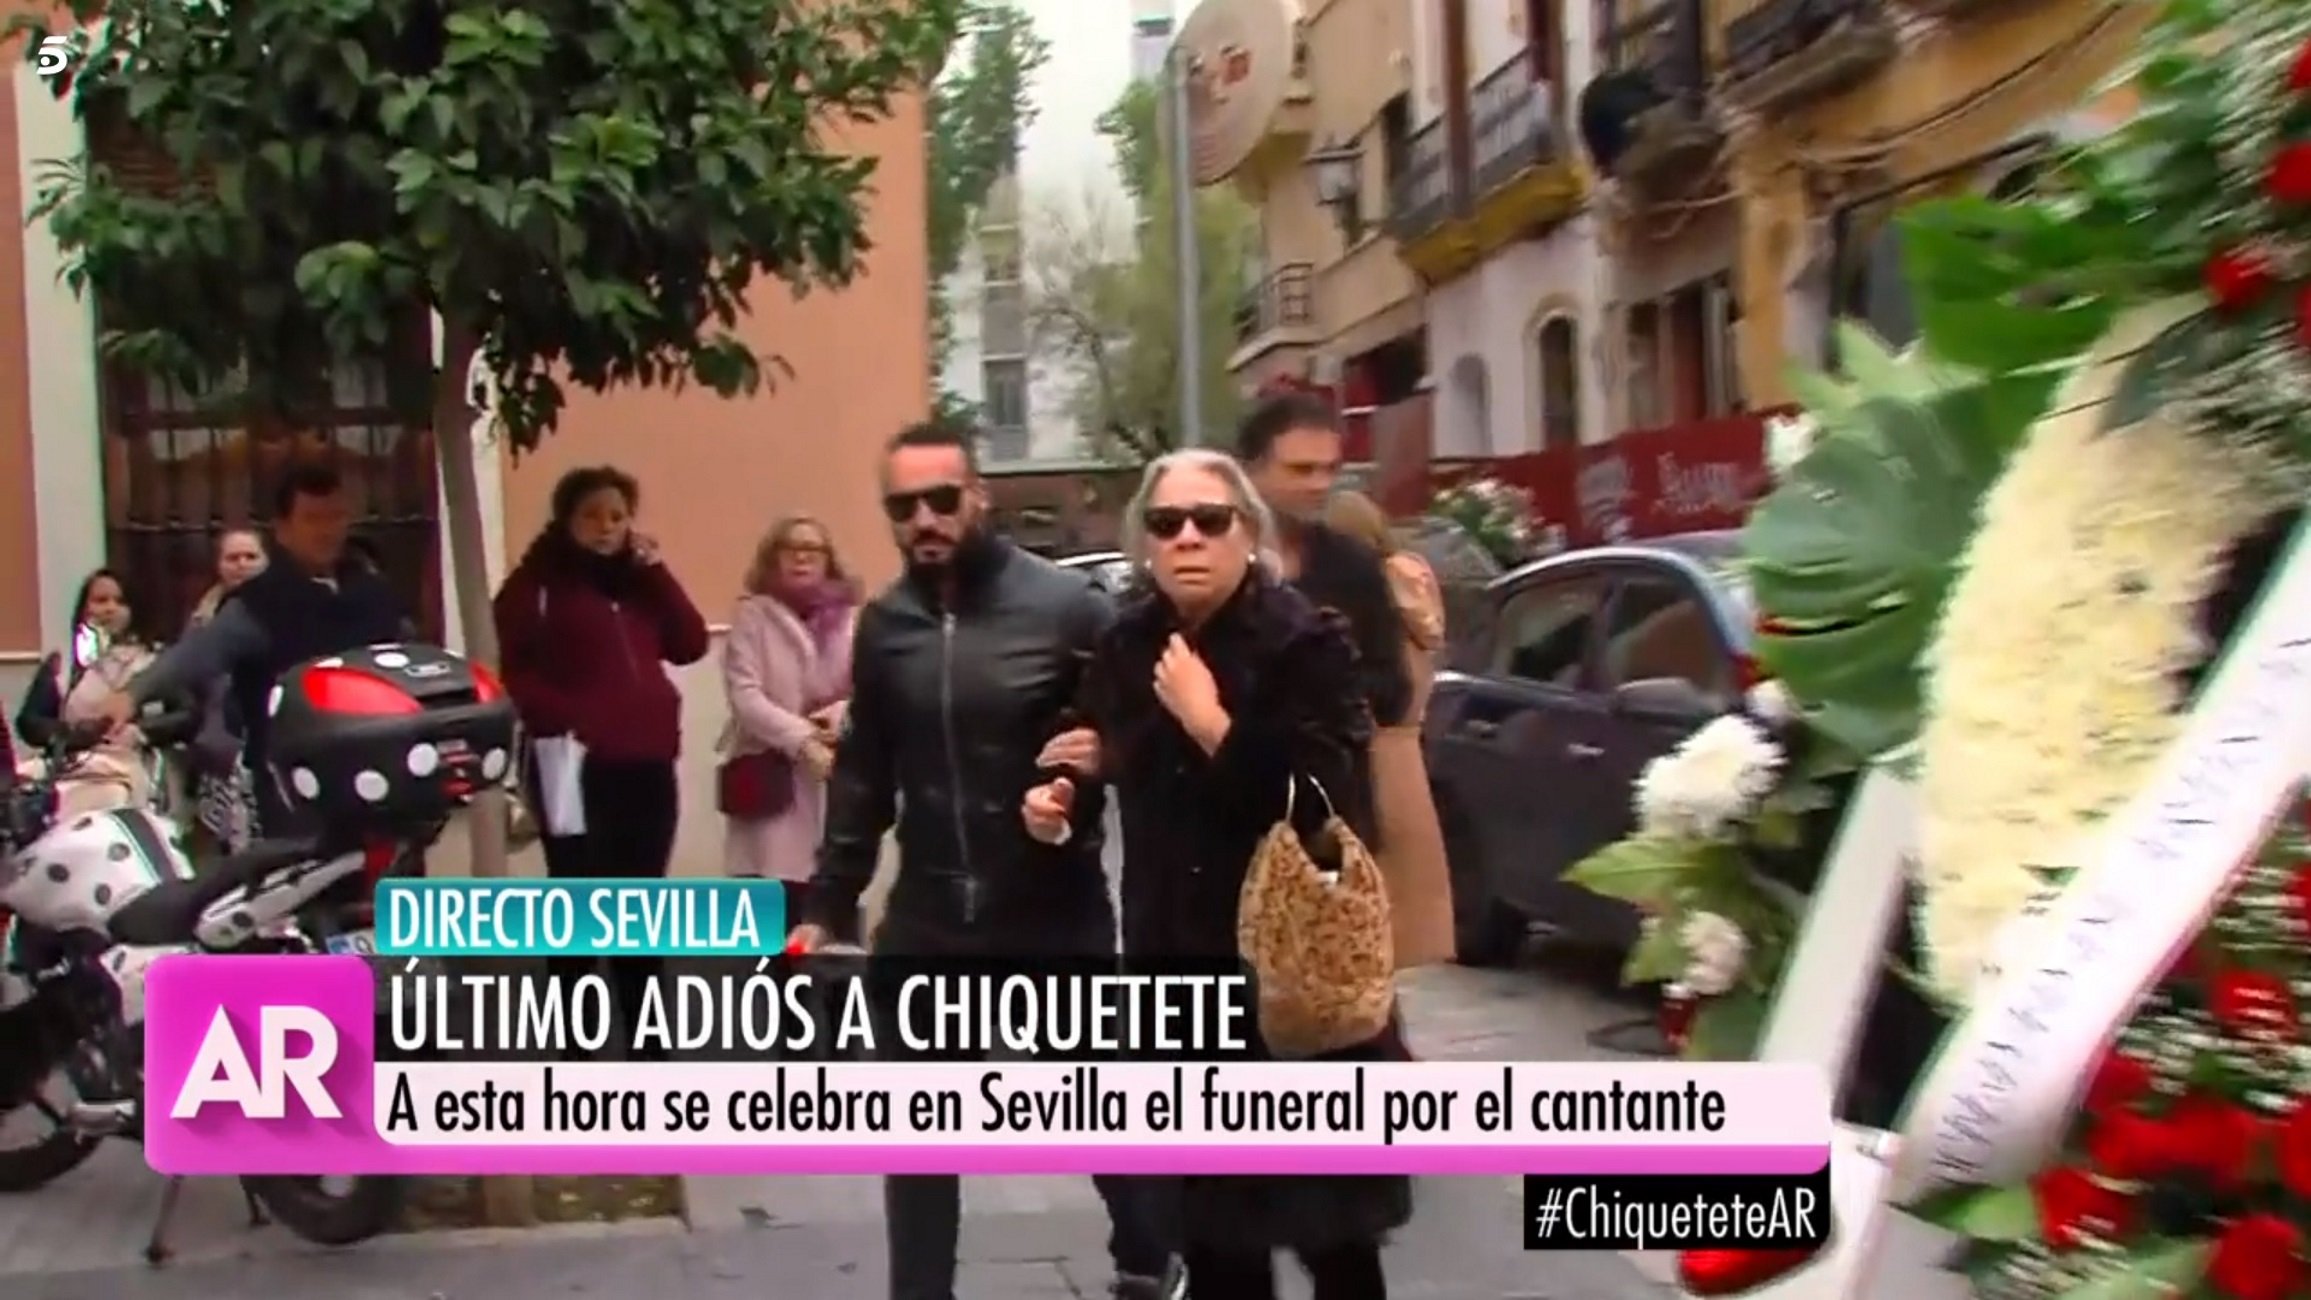 El funeral de Chiquetete acaba en desastre: la parella i l’amant es barallen a crits